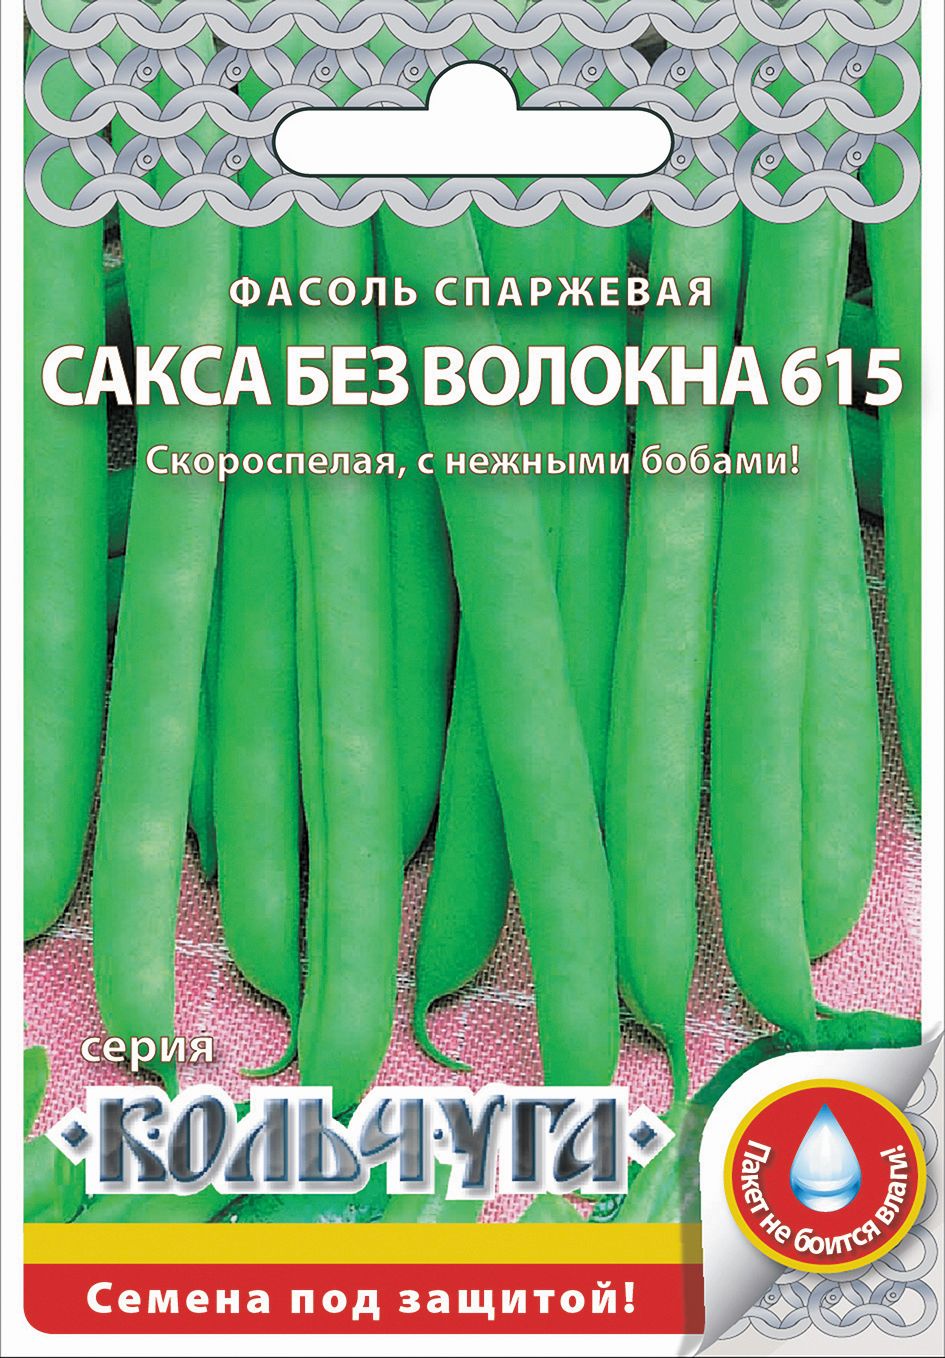 Семена Фасоль спаржевая Сакса без волокна 615 : описание сорта, фото -купить с доставкой или почтой России